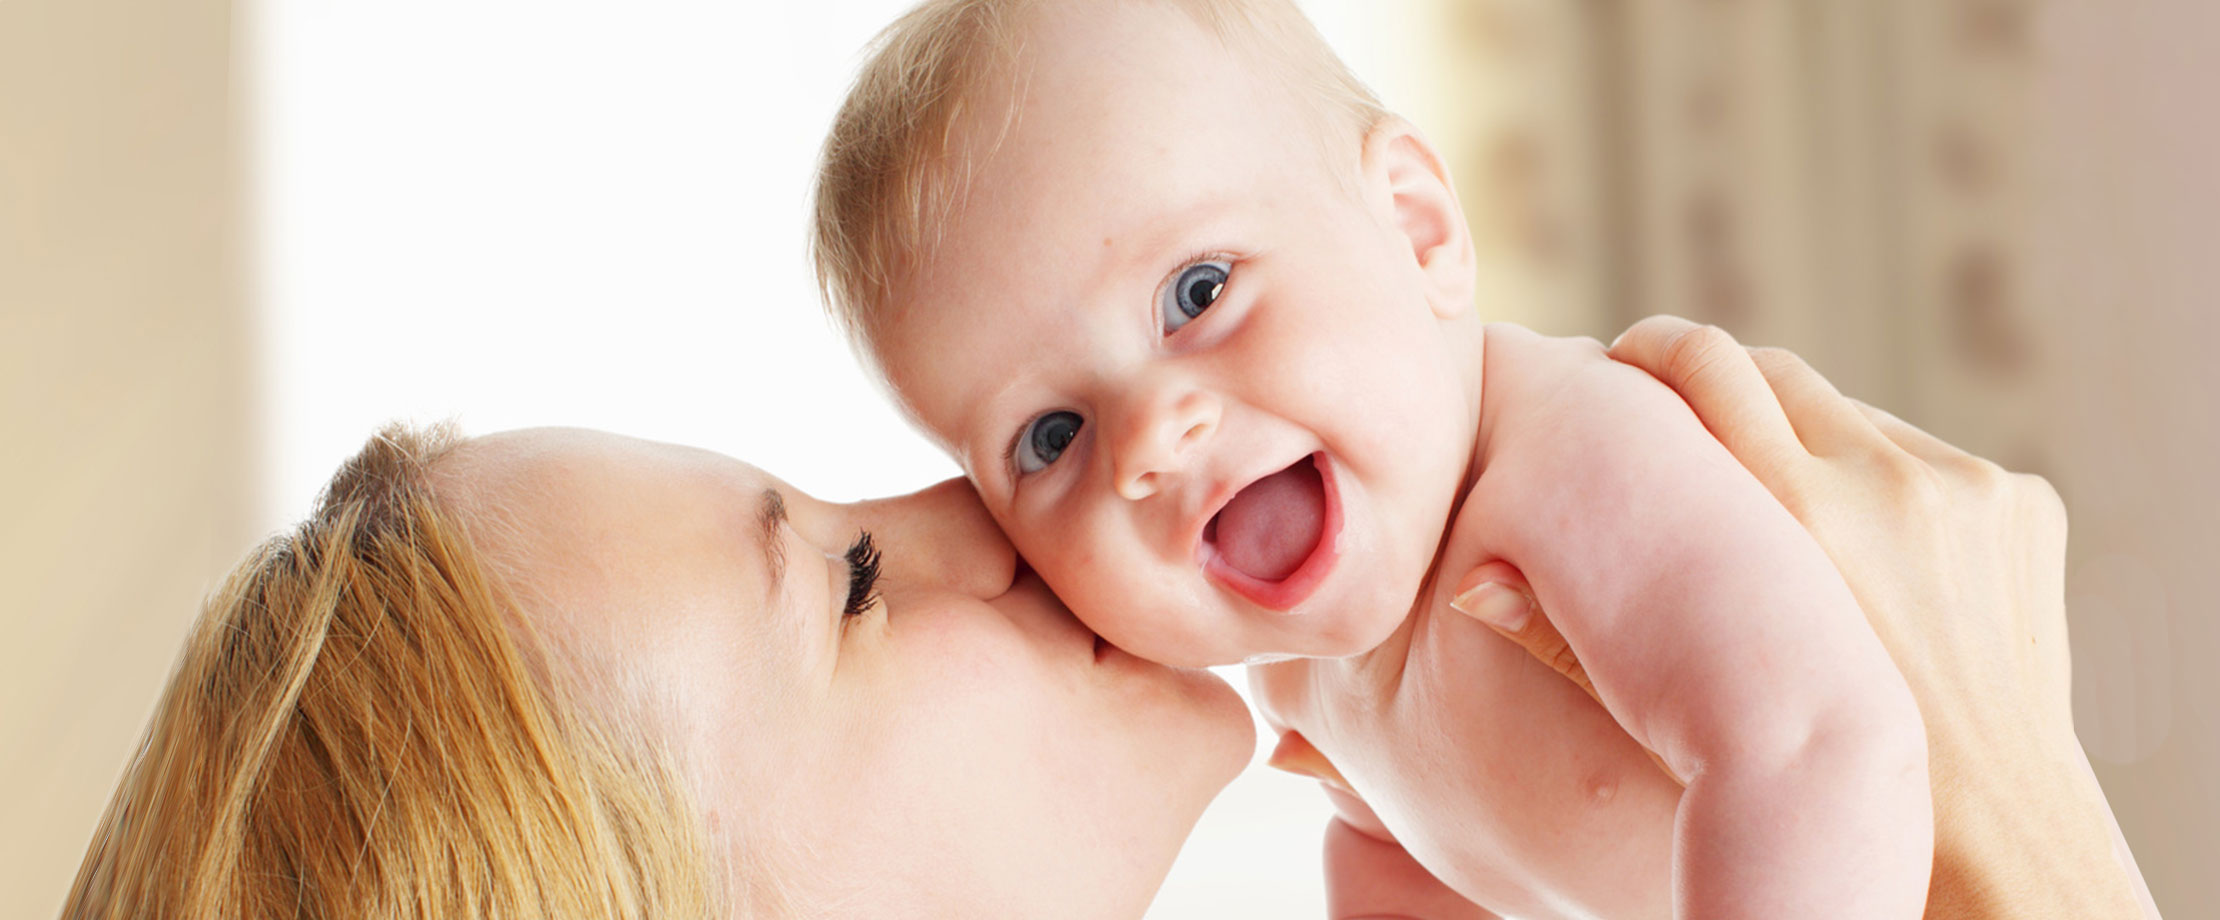 Eine Mutter hält ihr lachendes Baby in die Höhe und küsst es auf die Wange. Das Gesicht des Babys ist der Kamera zugewandt. 